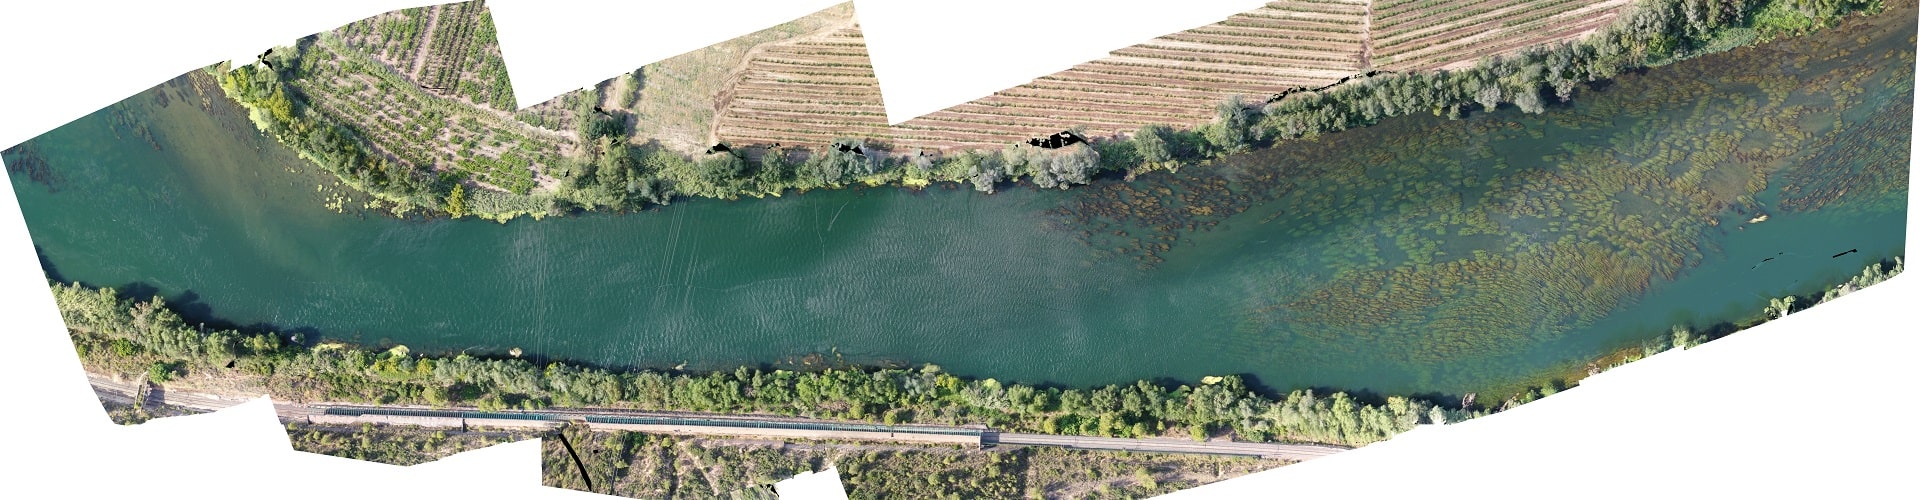 Control de densidad de algas en el río Ebro